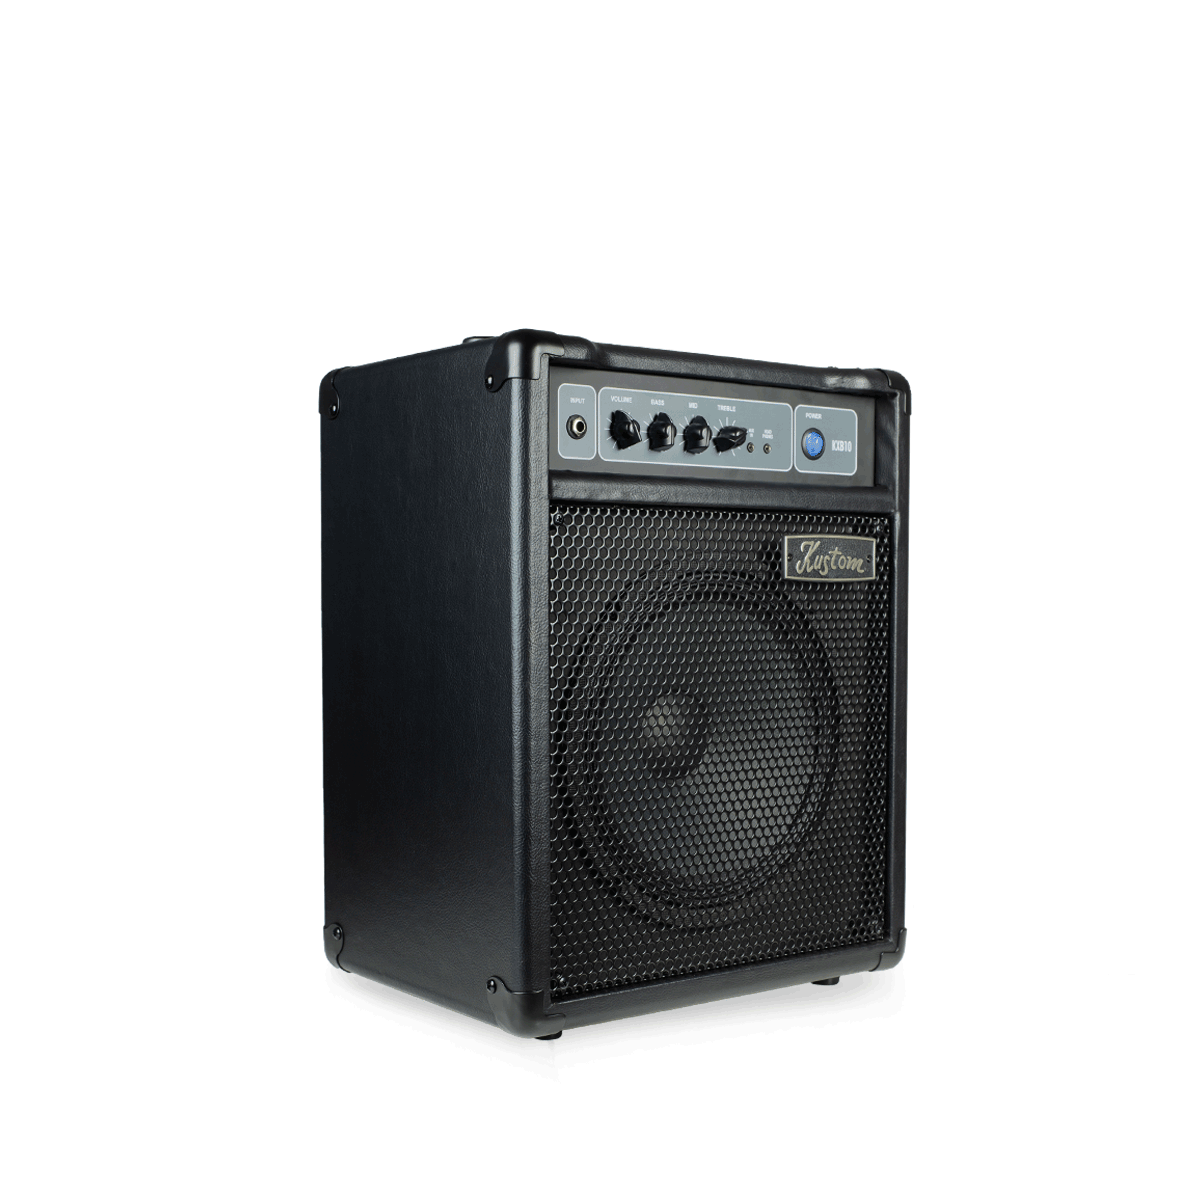 Kustom KXB10 10W Bass Combo Amplifier (1 x 10Inch Speaker)